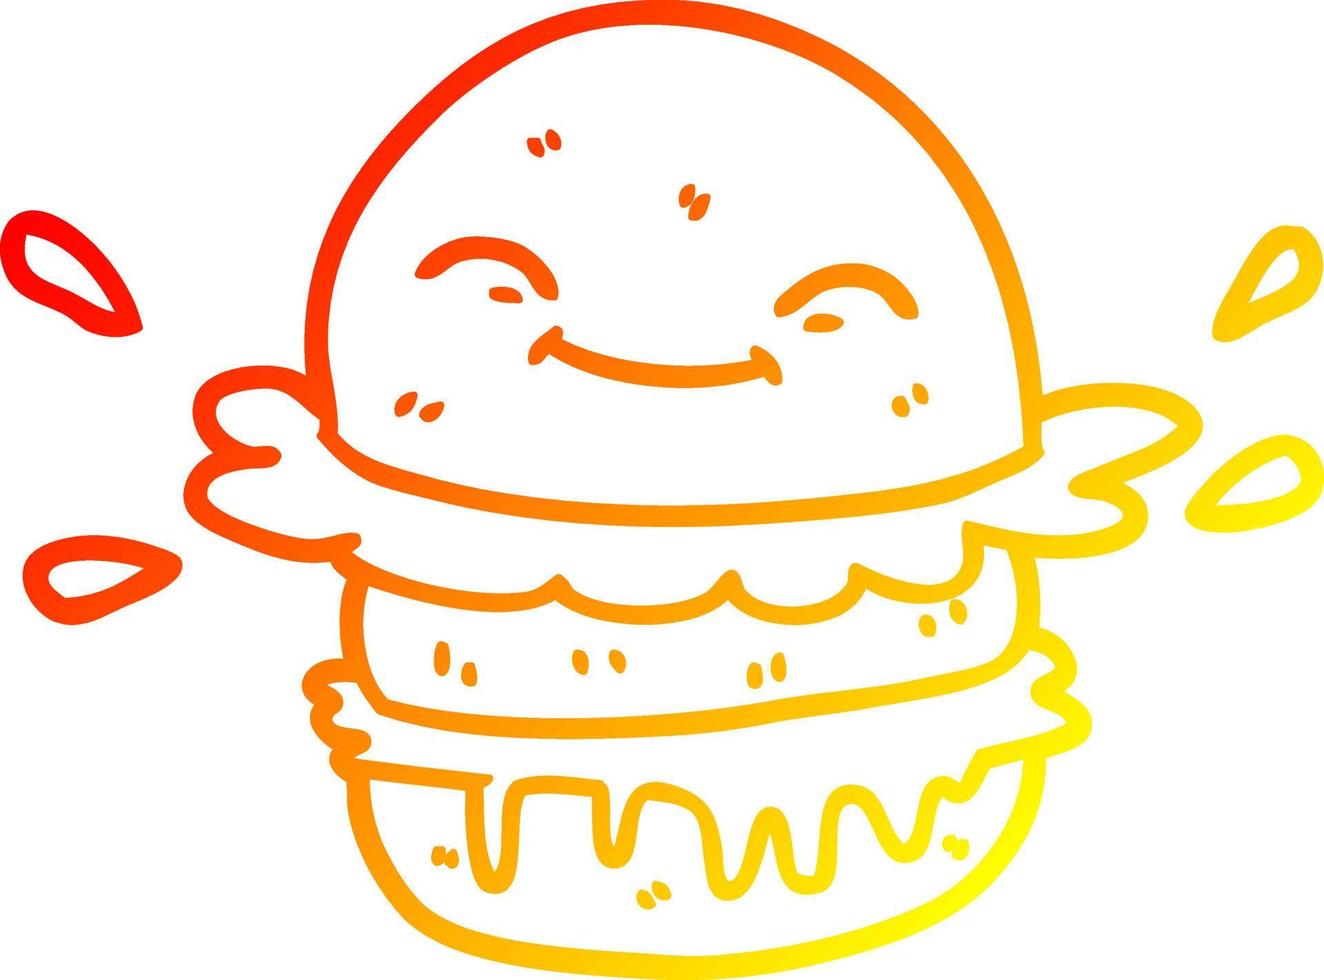 ligne de gradient chaud dessin dessin animé burger de restauration rapide vecteur